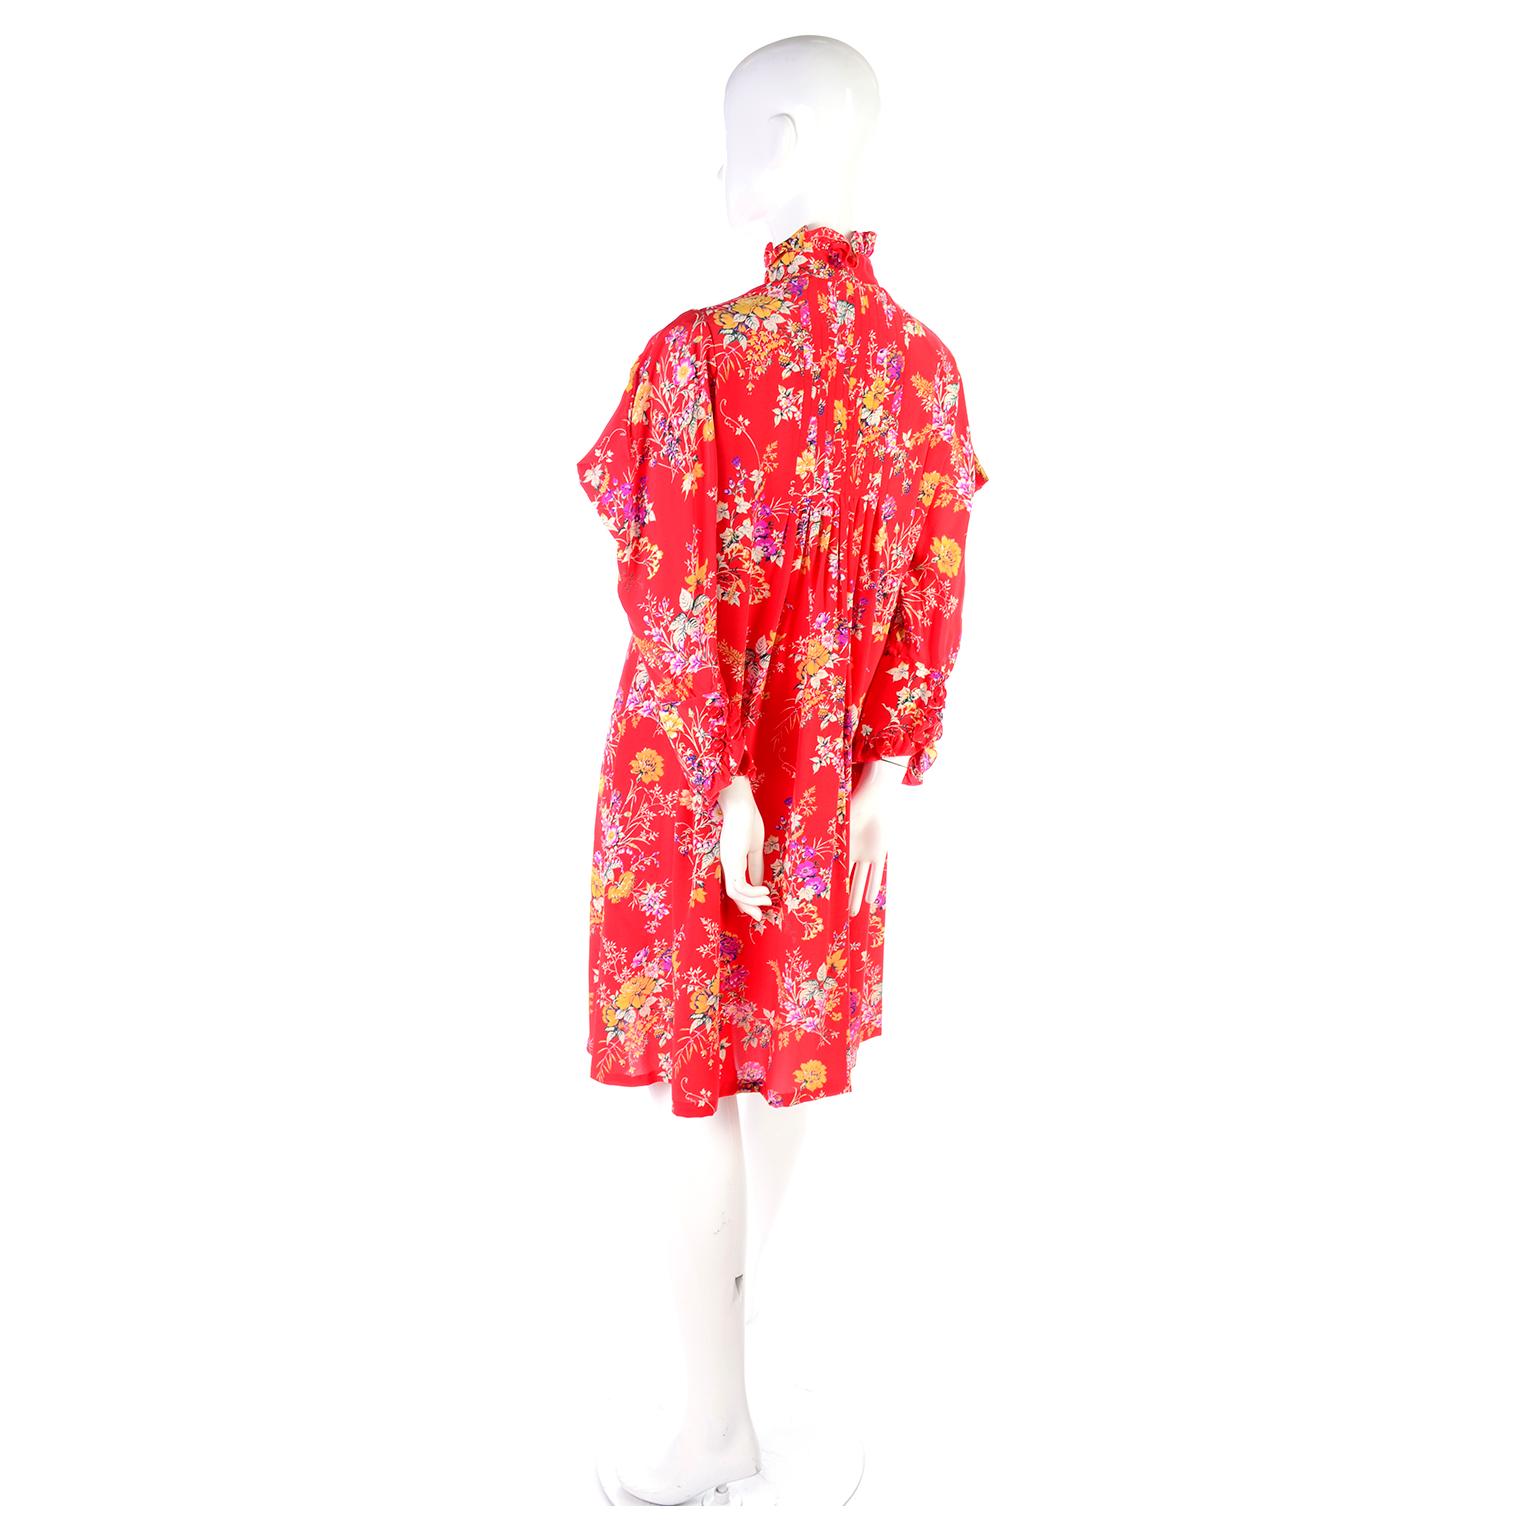 Vintage Emanuel Ungaro Dress in Red Floral Silk W High Neck & Dramatic Shoulders 5